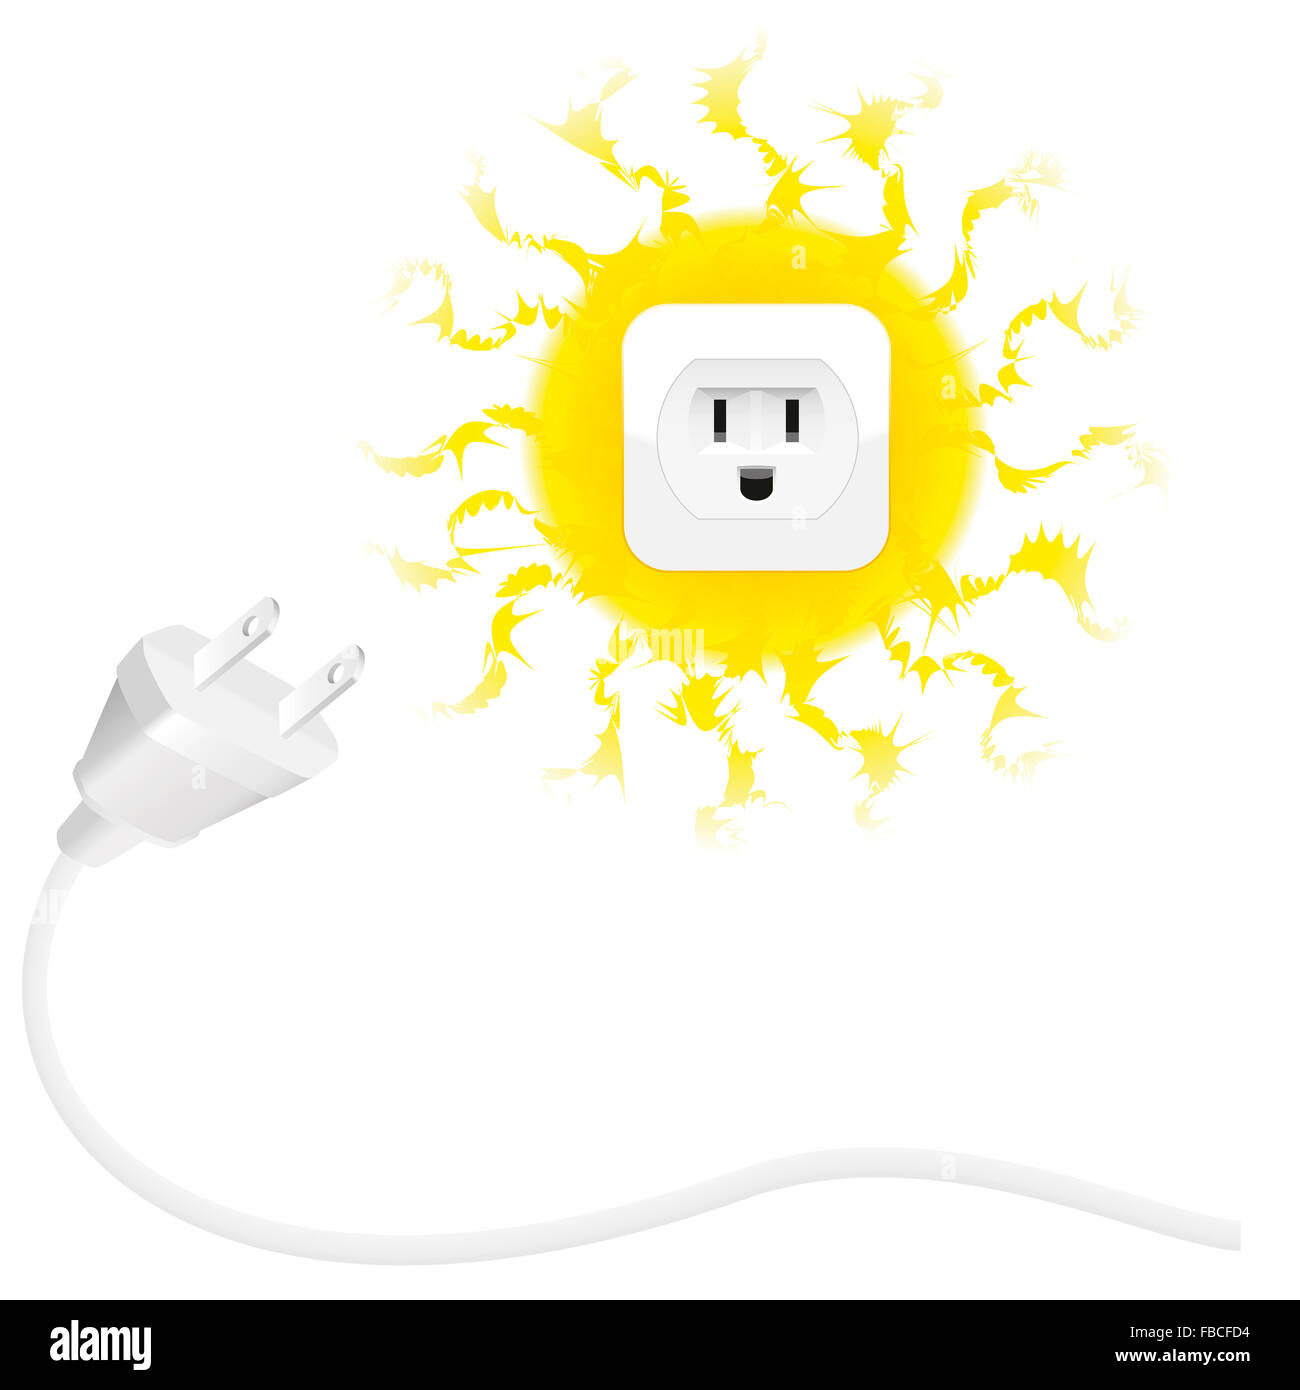 Erneuerbare Energien - Solarenergie - Stecker und Sonne mit Steckdose. Abbildung auf weißem Hintergrund. Stockfoto